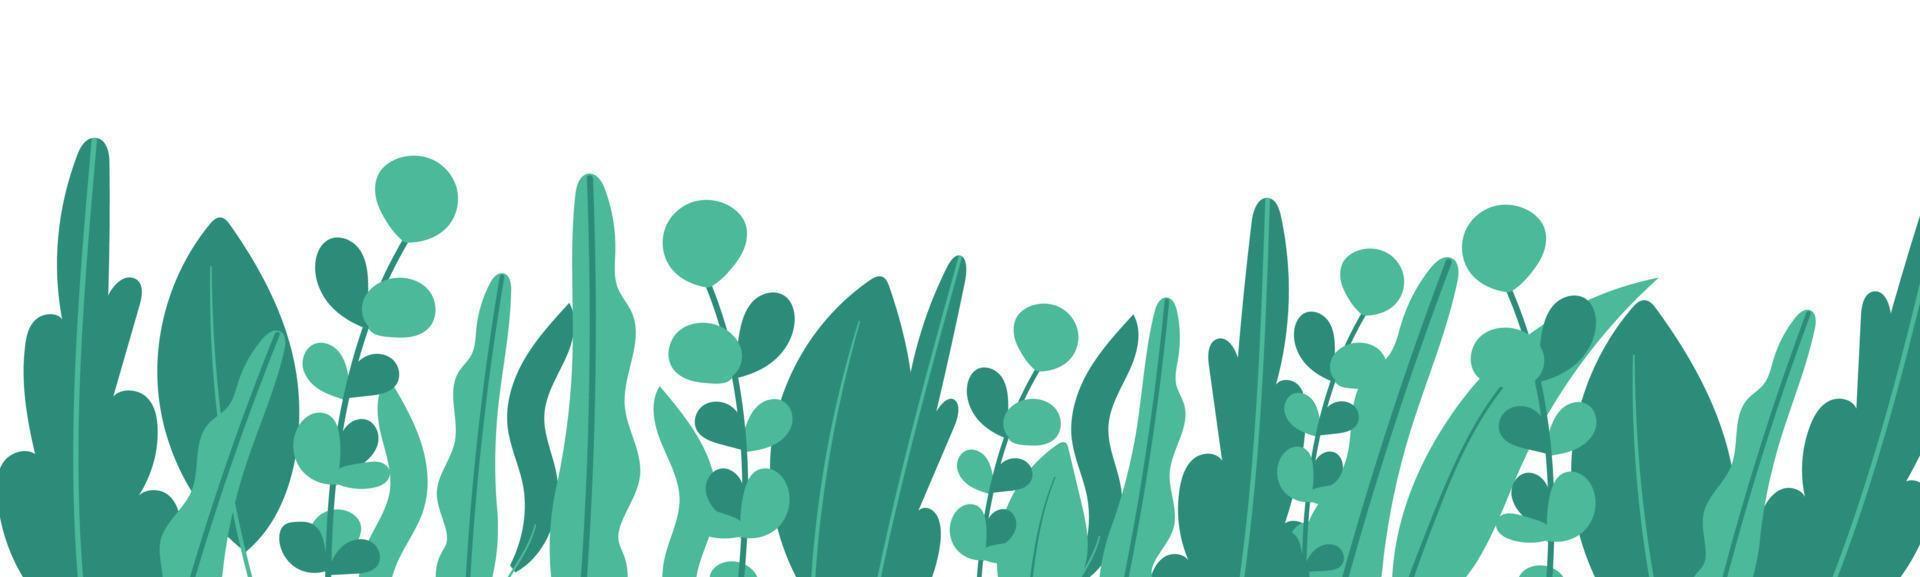 planten minimalistische vector banner. hand getekende bloemen, gras, takken, bladeren op een witte achtergrond. groen eenvoudig horizontaal patroon. eenvoudige vlakke stijl. alle elementen zijn geïsoleerd en bewerkbaar